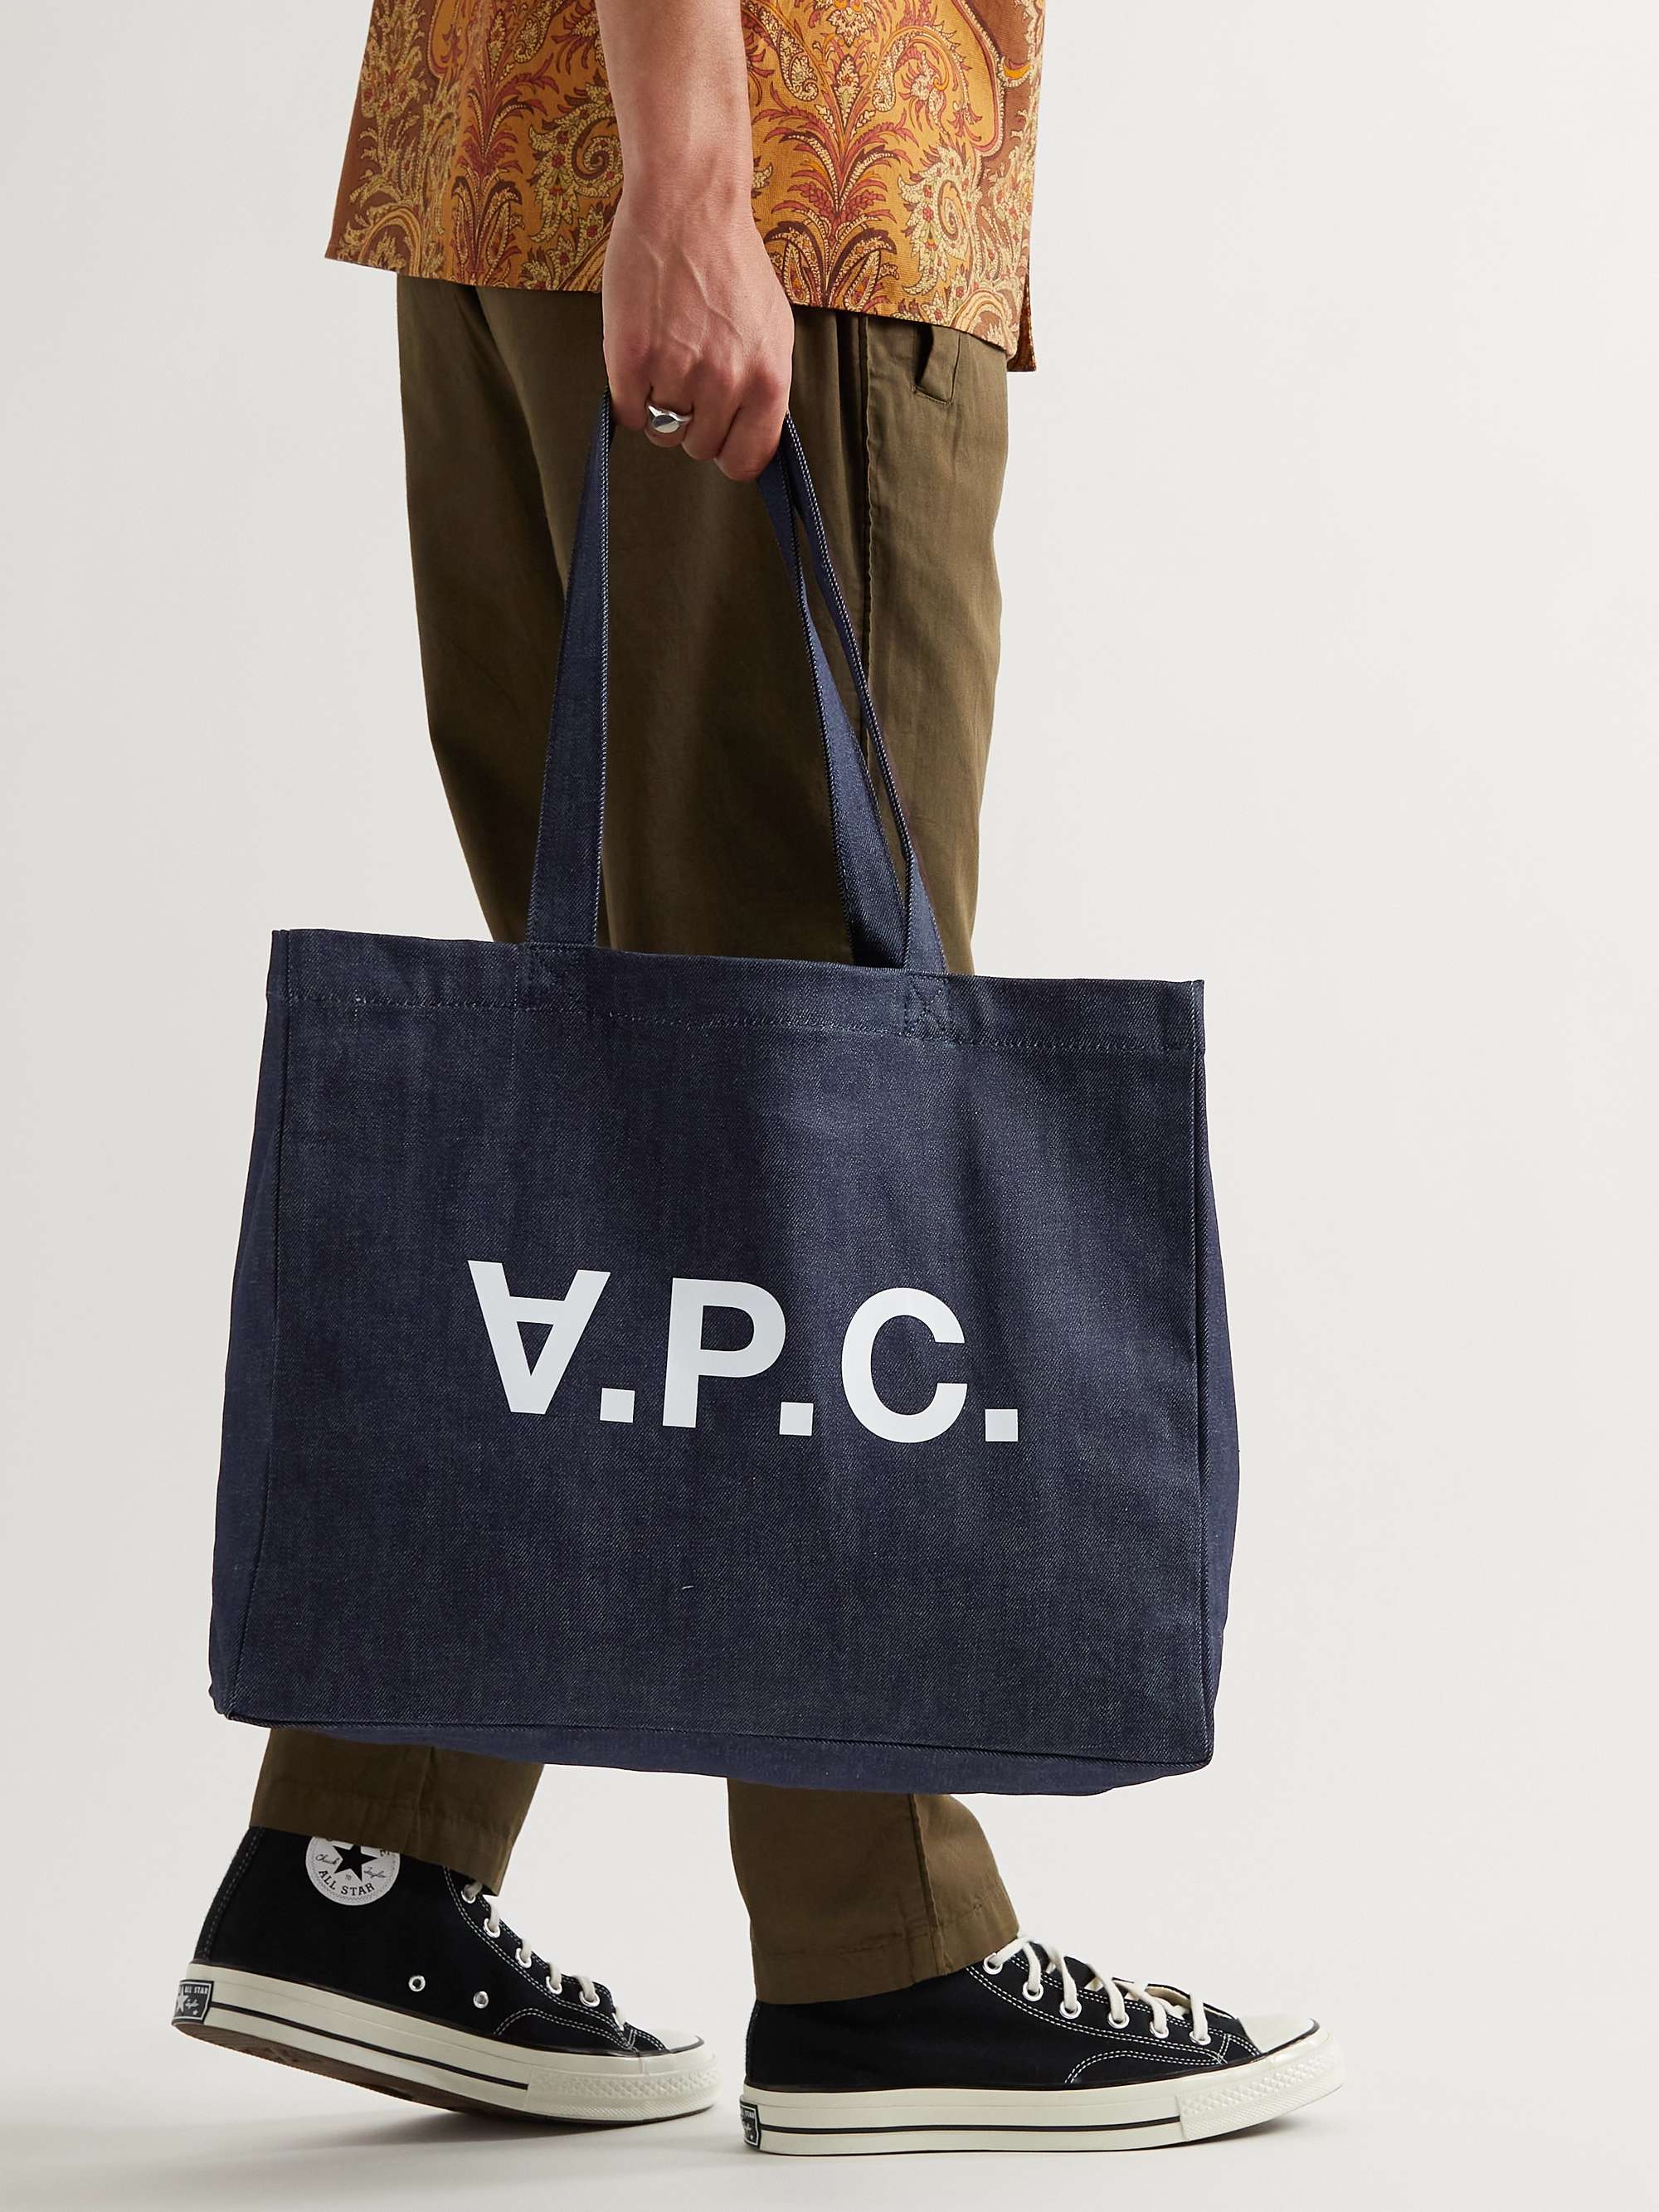 A.P.C. Logo-Print Denim Tote Bag